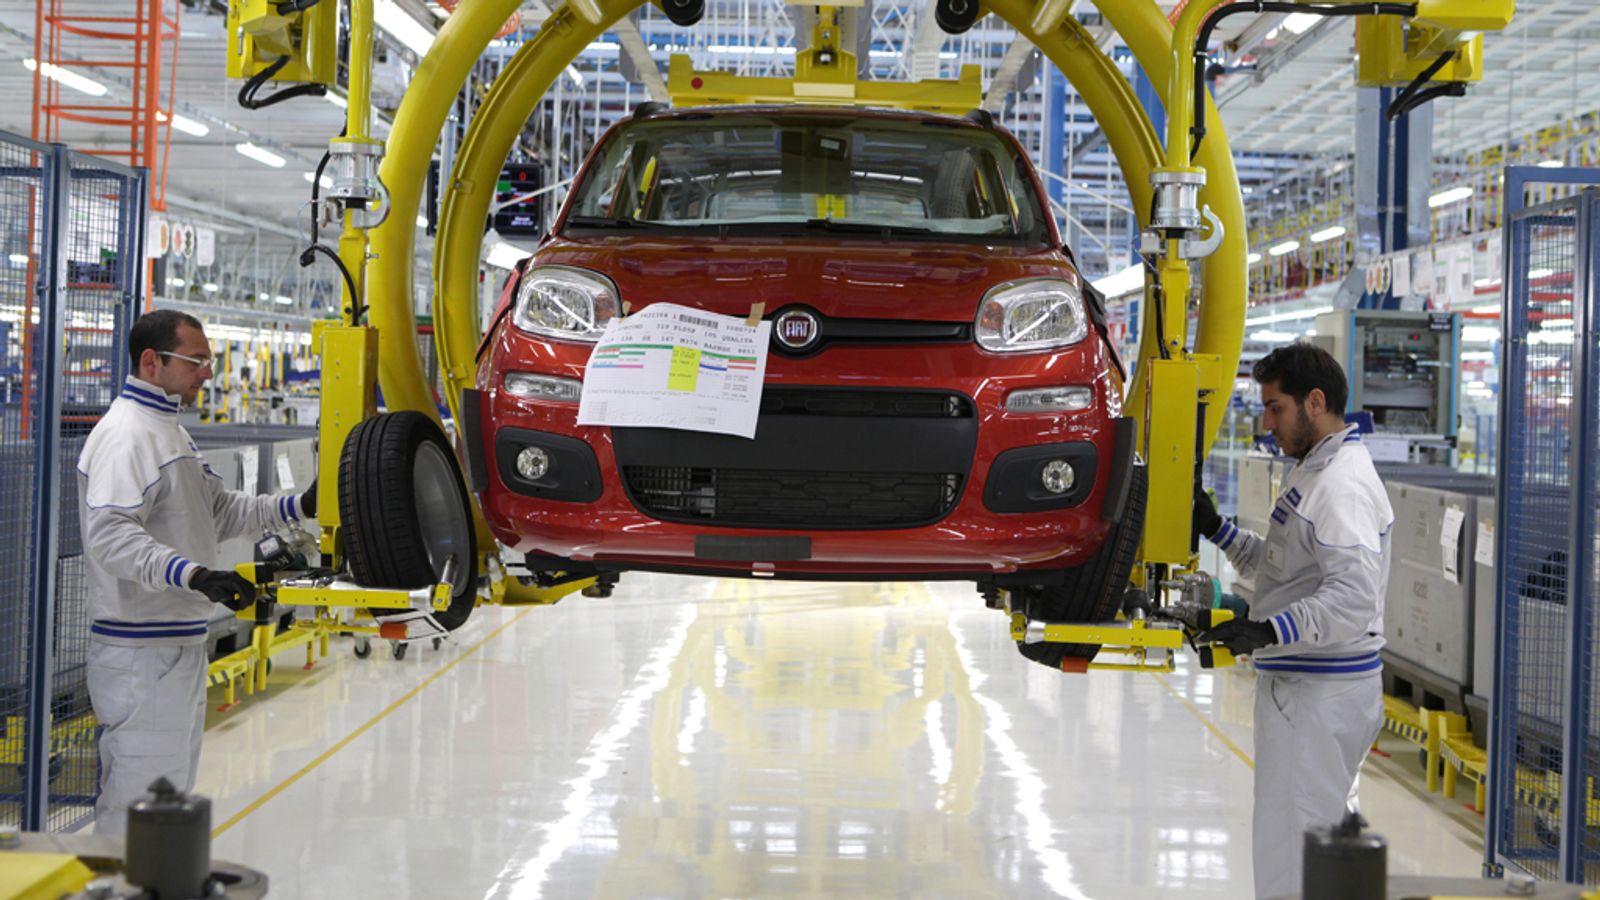 Operaio automobilistico italiano: “Costruire un forte movimento di classe dei lavoratori a livello internazionale”